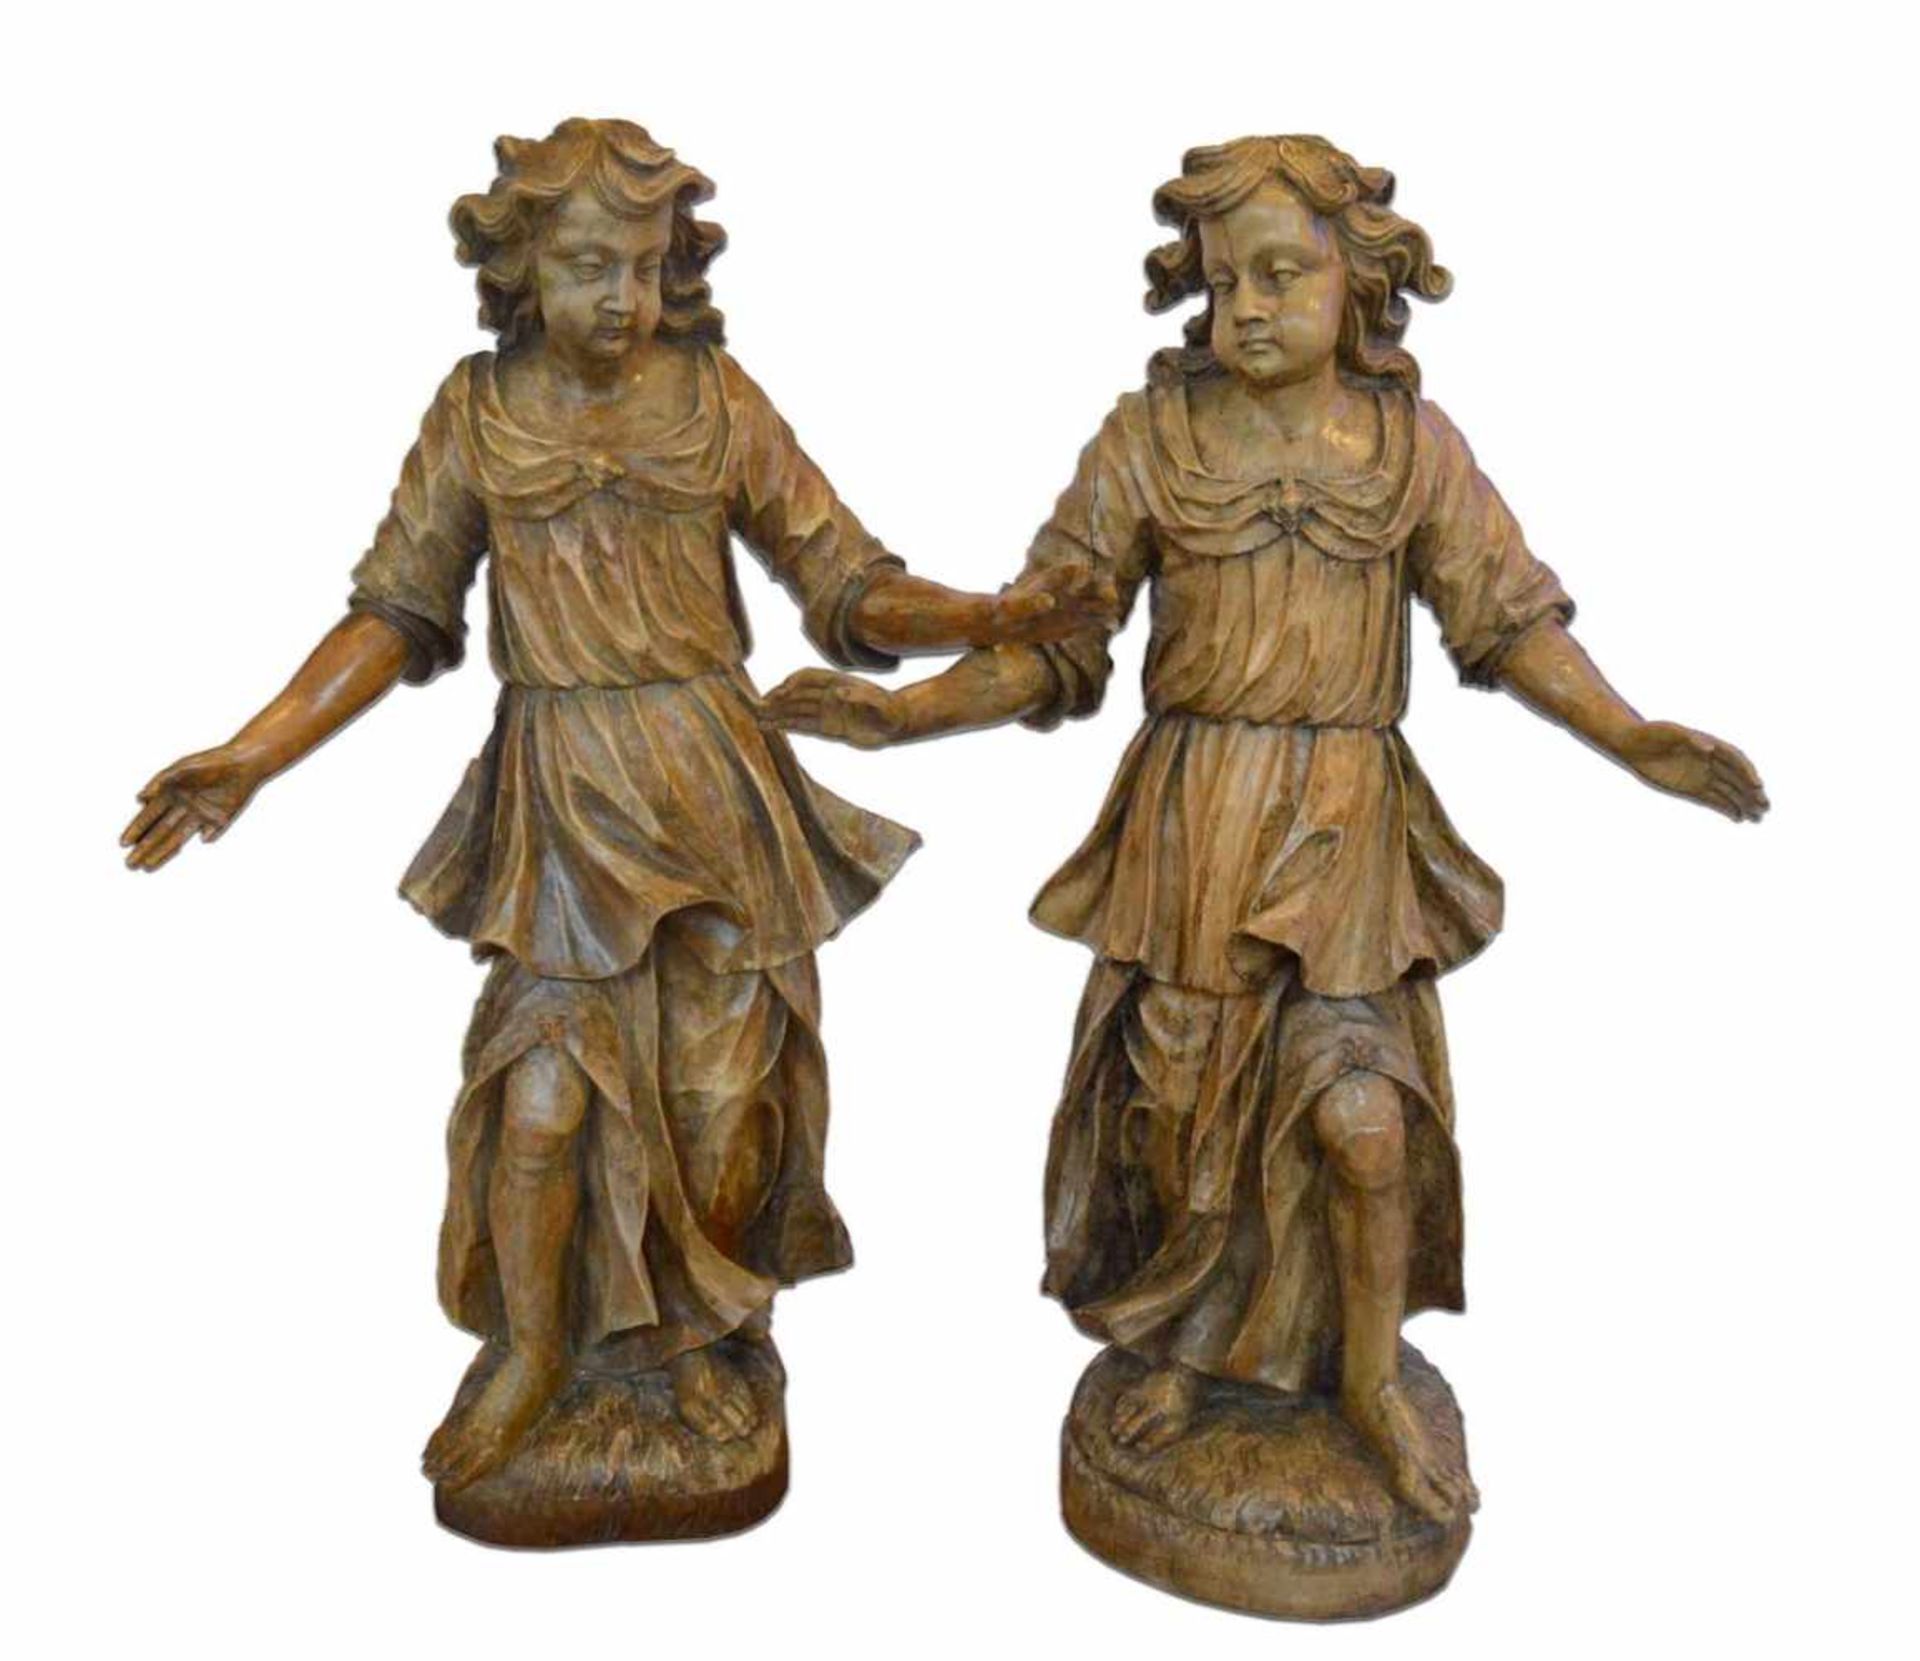 Paar BarockengelHartholz, geschnitzt, auf rechteckigem Sockel stehend, faltenreiches Gewand, mit